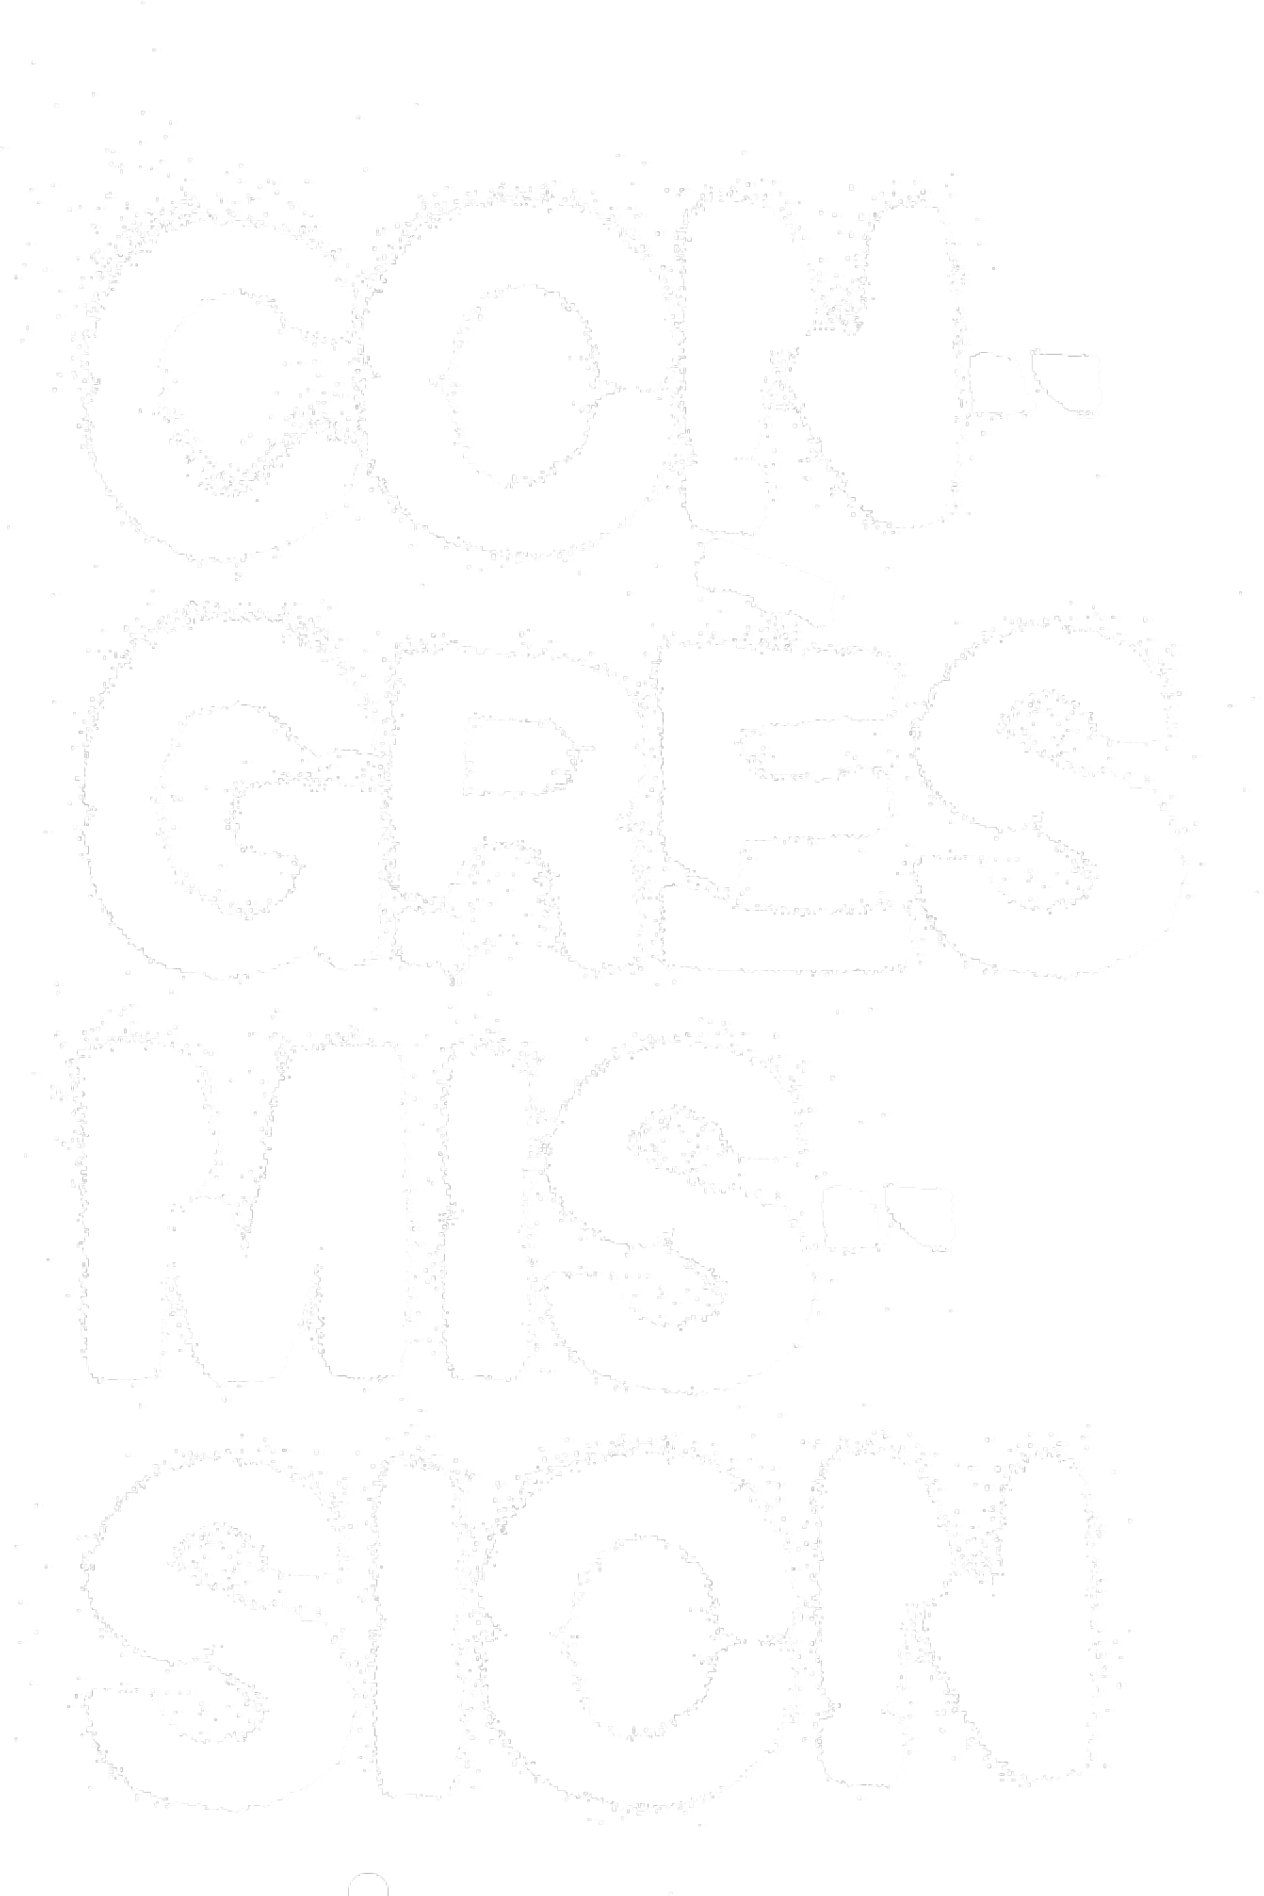 Logo Congrès Mission